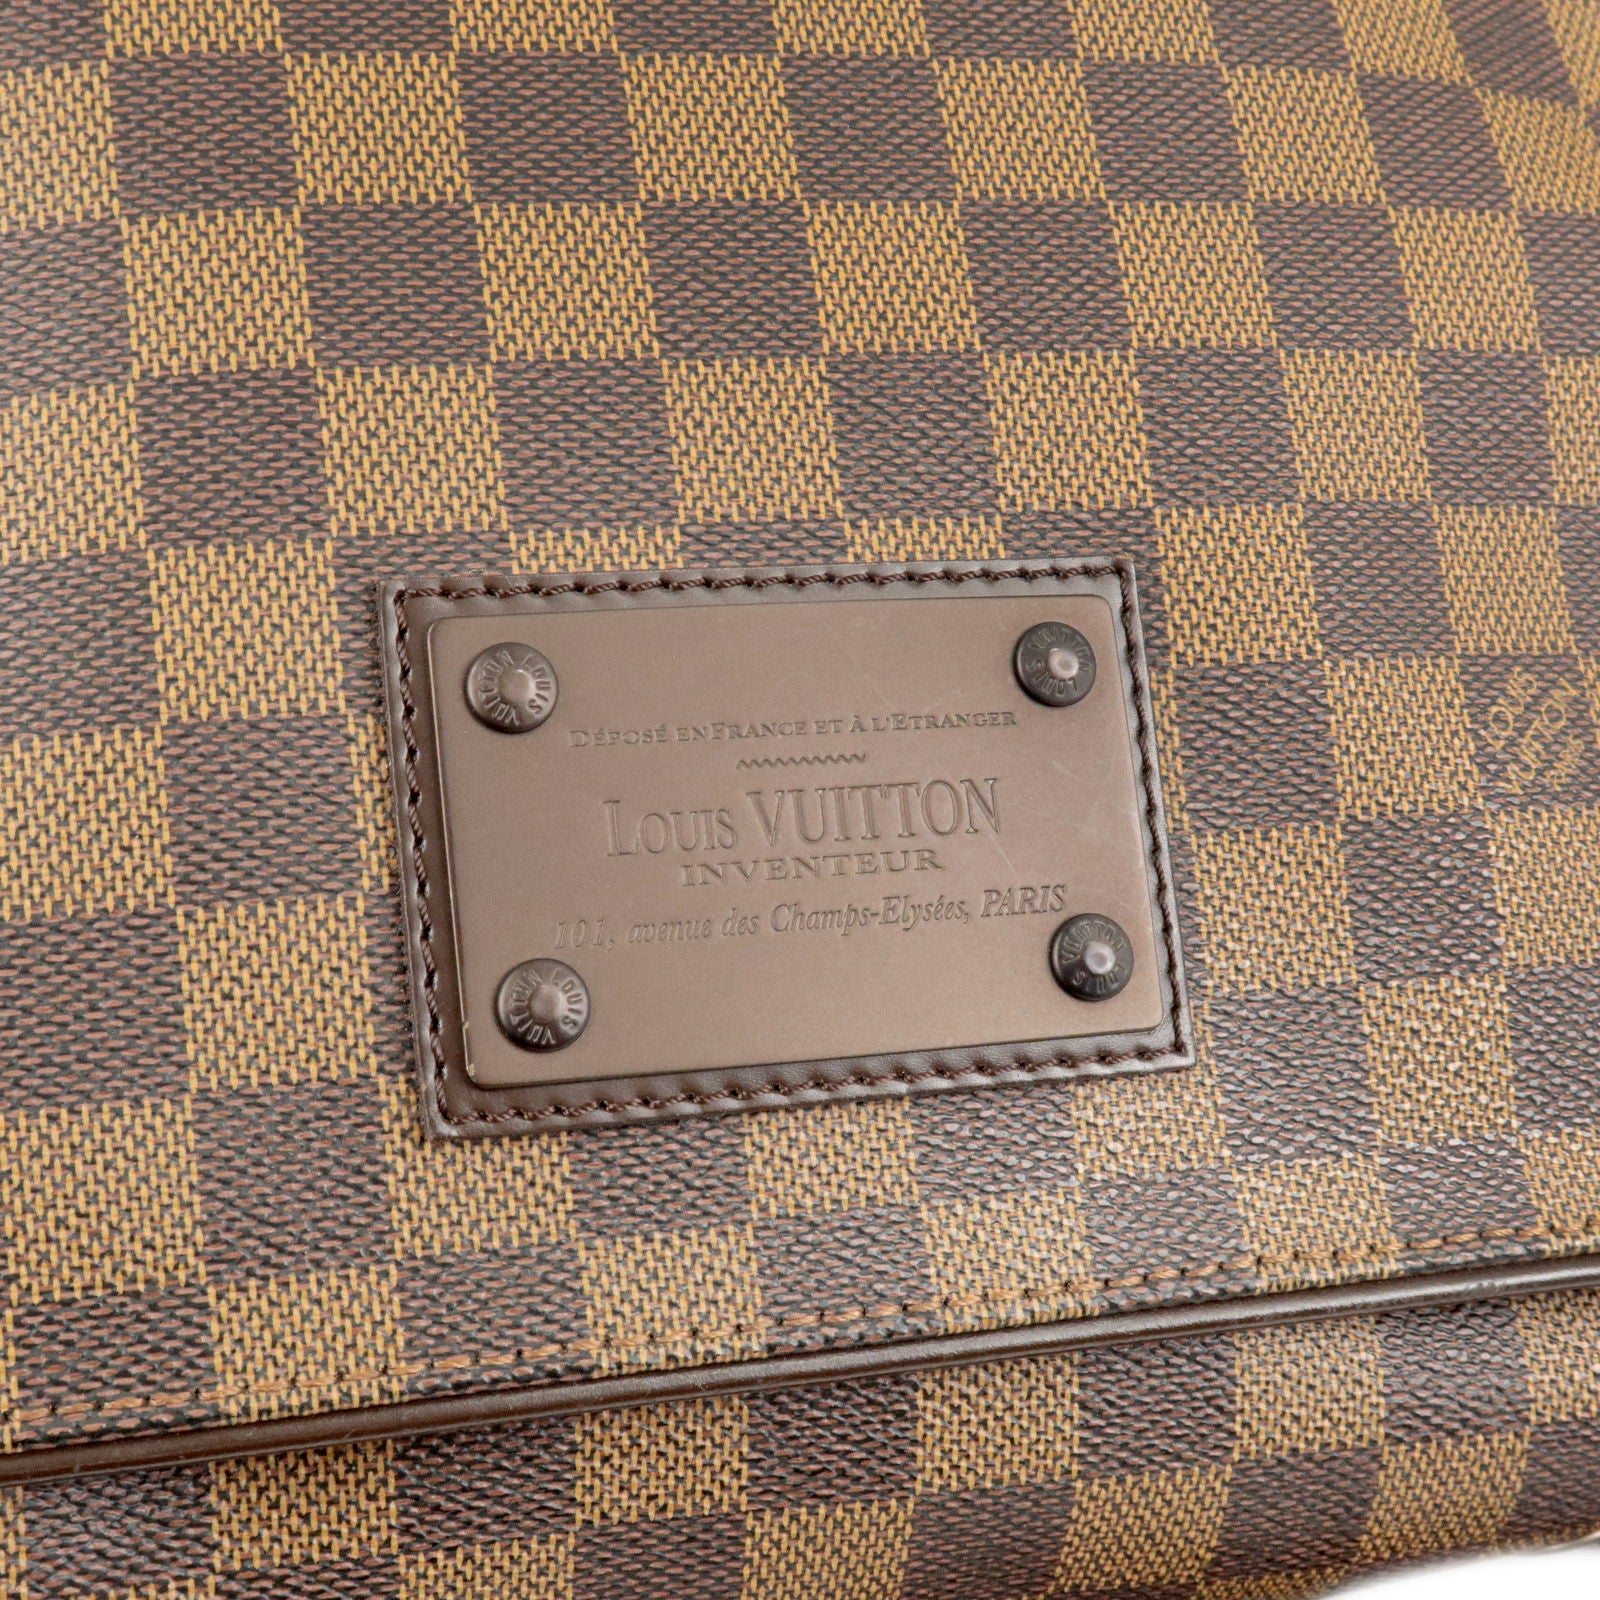 Louis Vuitton Brown Damier Ebene Brooklyn Mm Messenger Bag